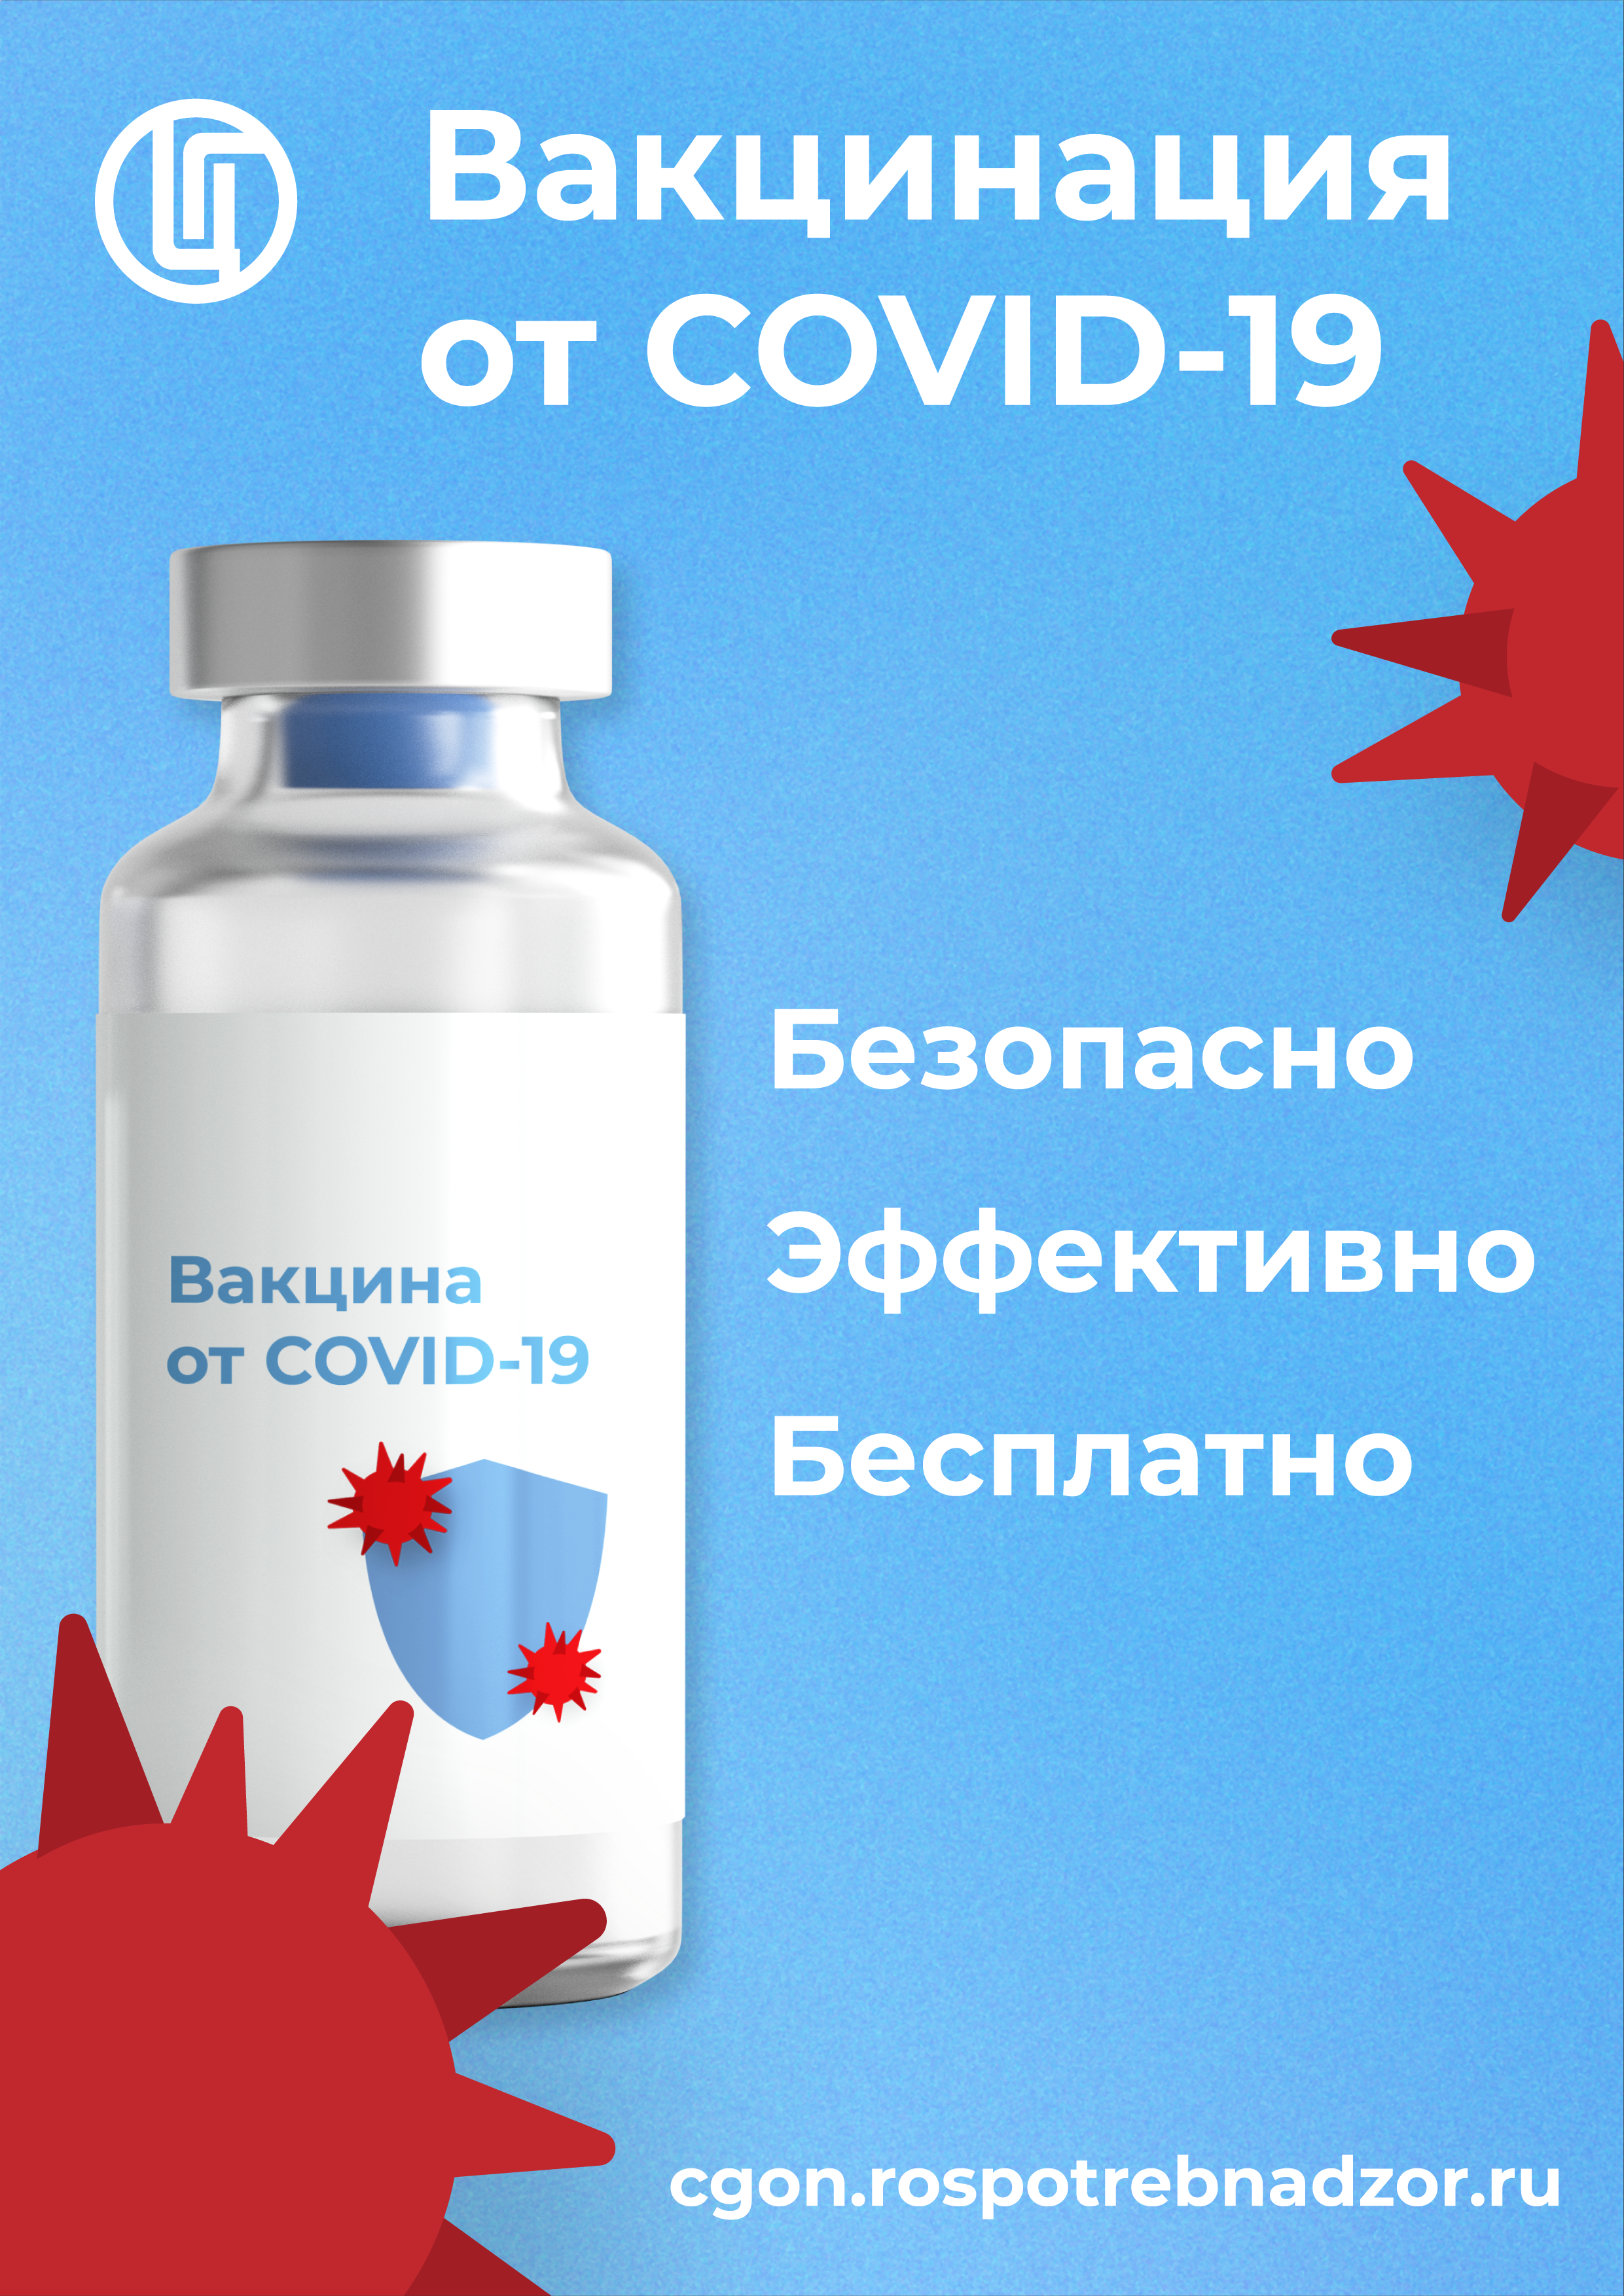 Плакат "Вакцинация от COVID-19"